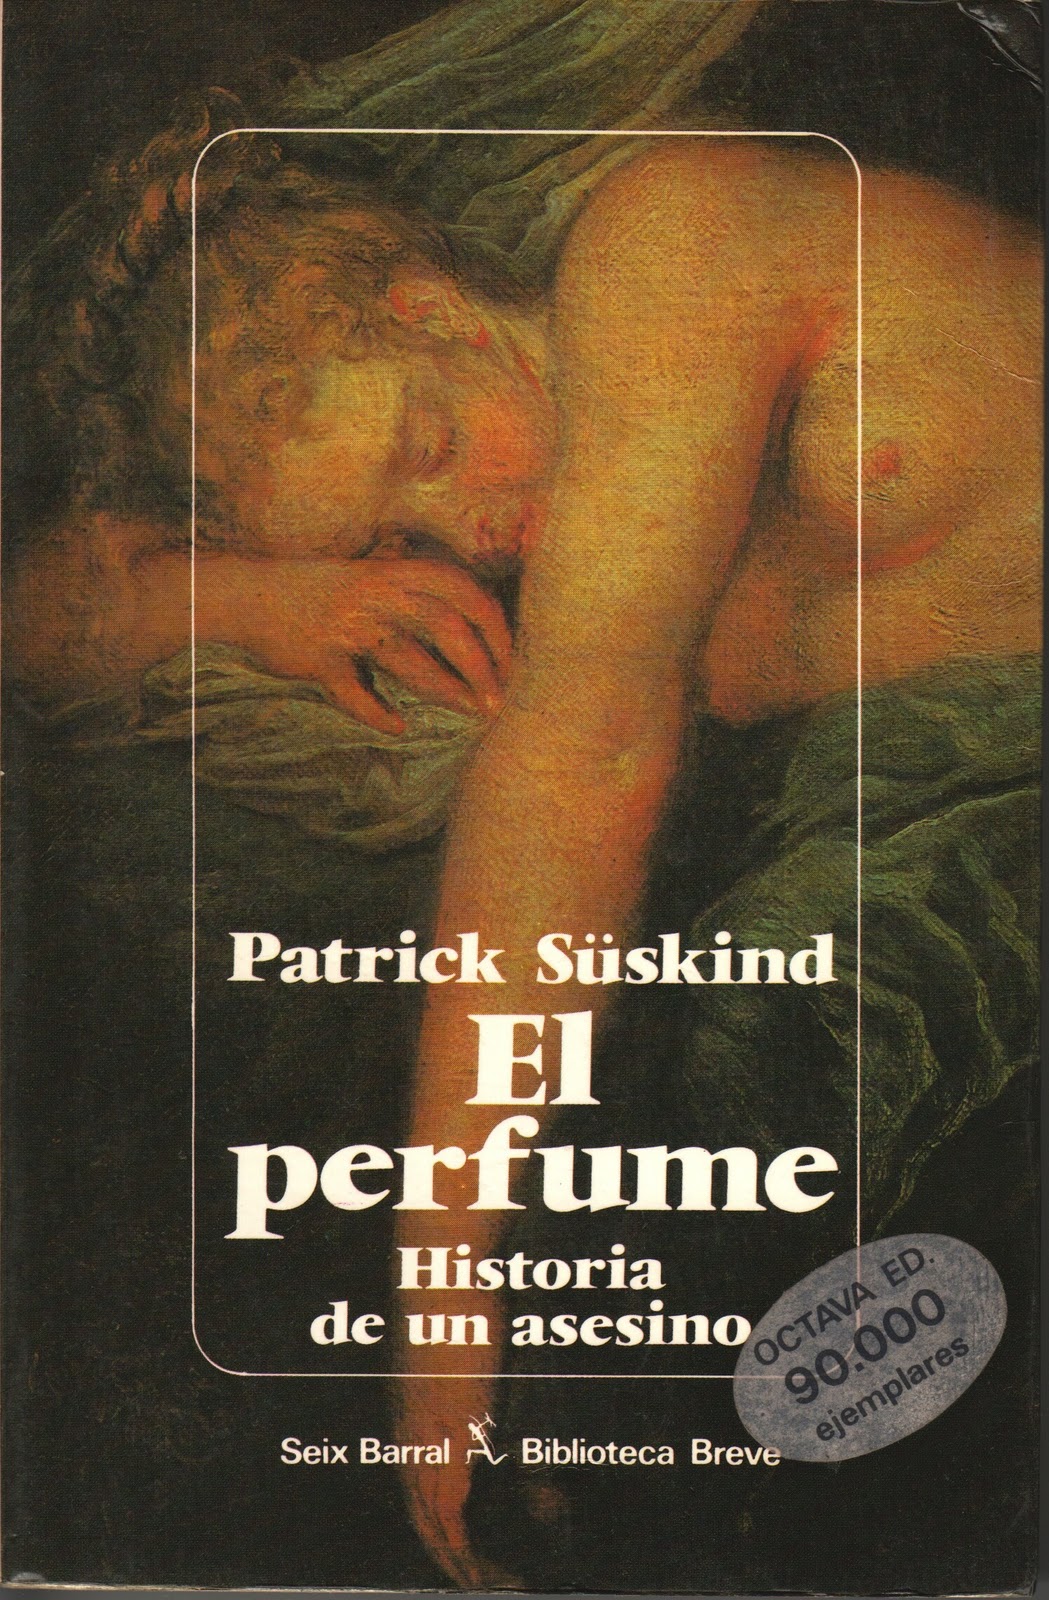 Free Download El Perfume Historia De Un Asesino Patrick Suskind Pdf Programs